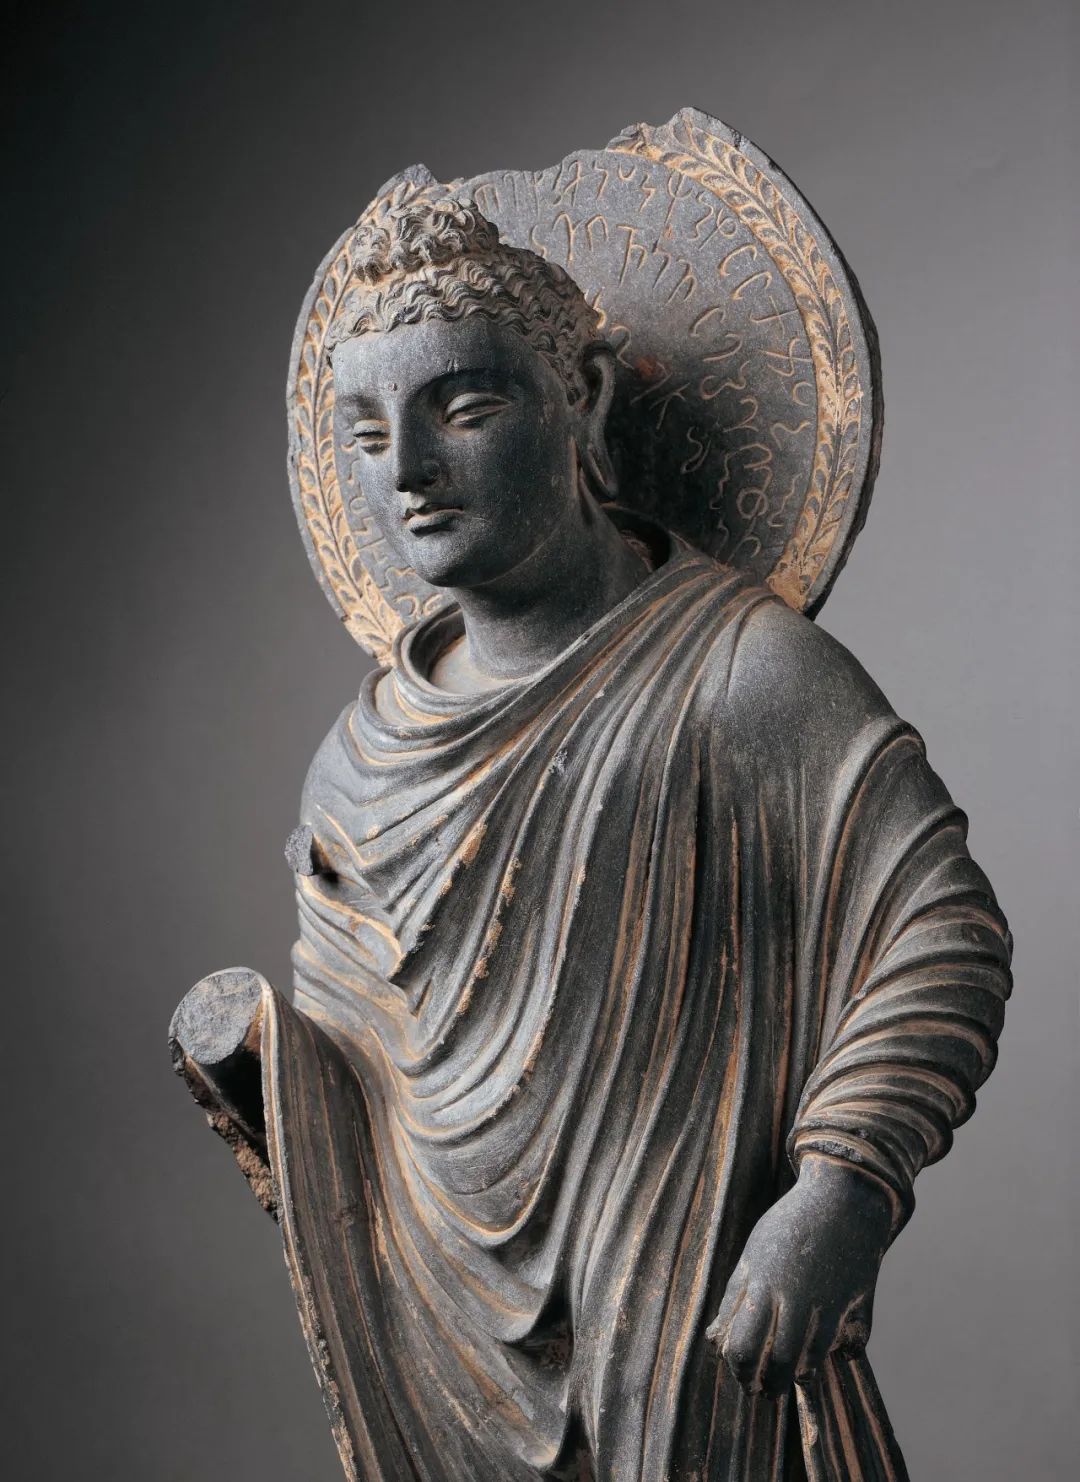 佛陀立像 公元2-3世纪 平山郁夫丝绸之路美术馆藏